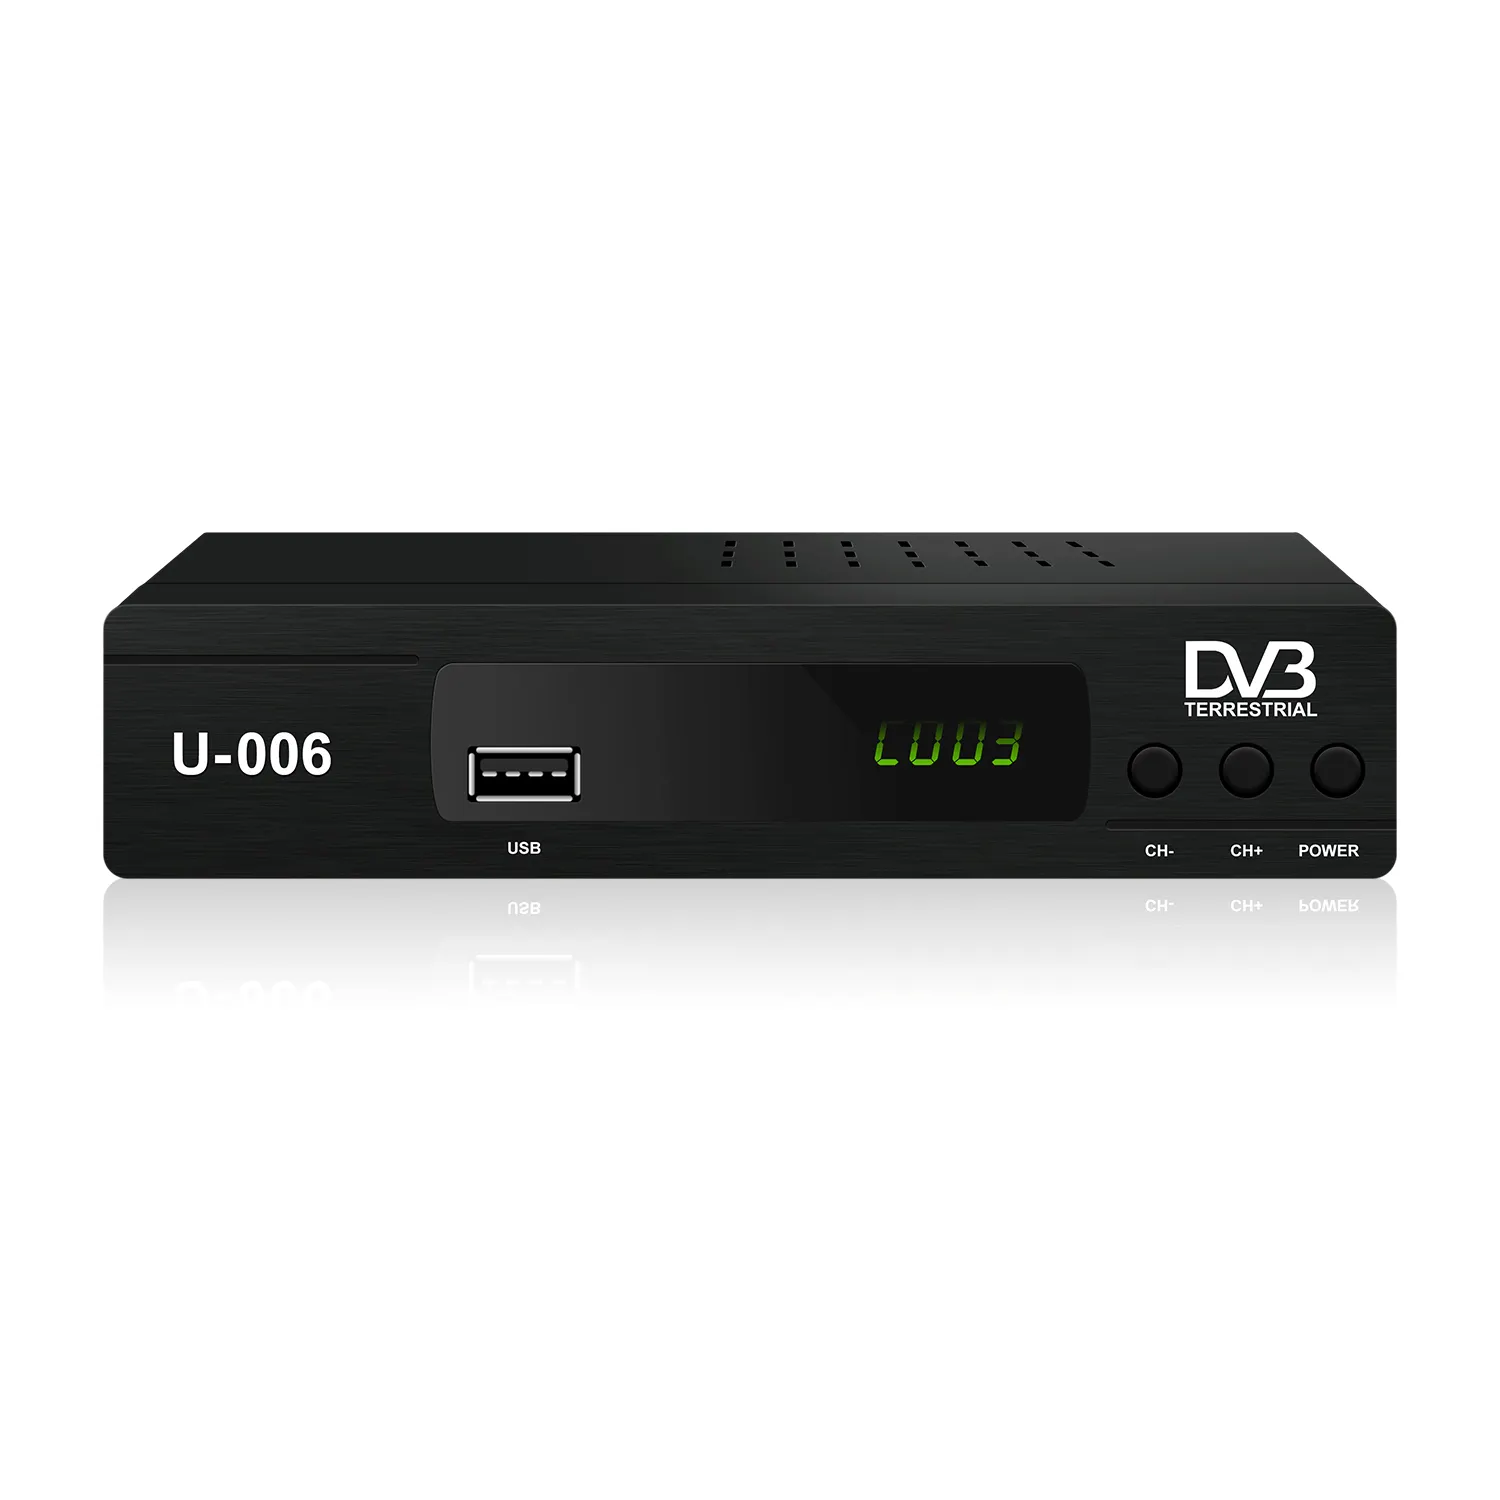 مصنع توريد OEM/ODM التلفزيون جهاز استقبال واي فاي DVB-T2 DVB-T2 H.264 كامل HD استقبال دعم يوتيوب تعيين كبار مربع